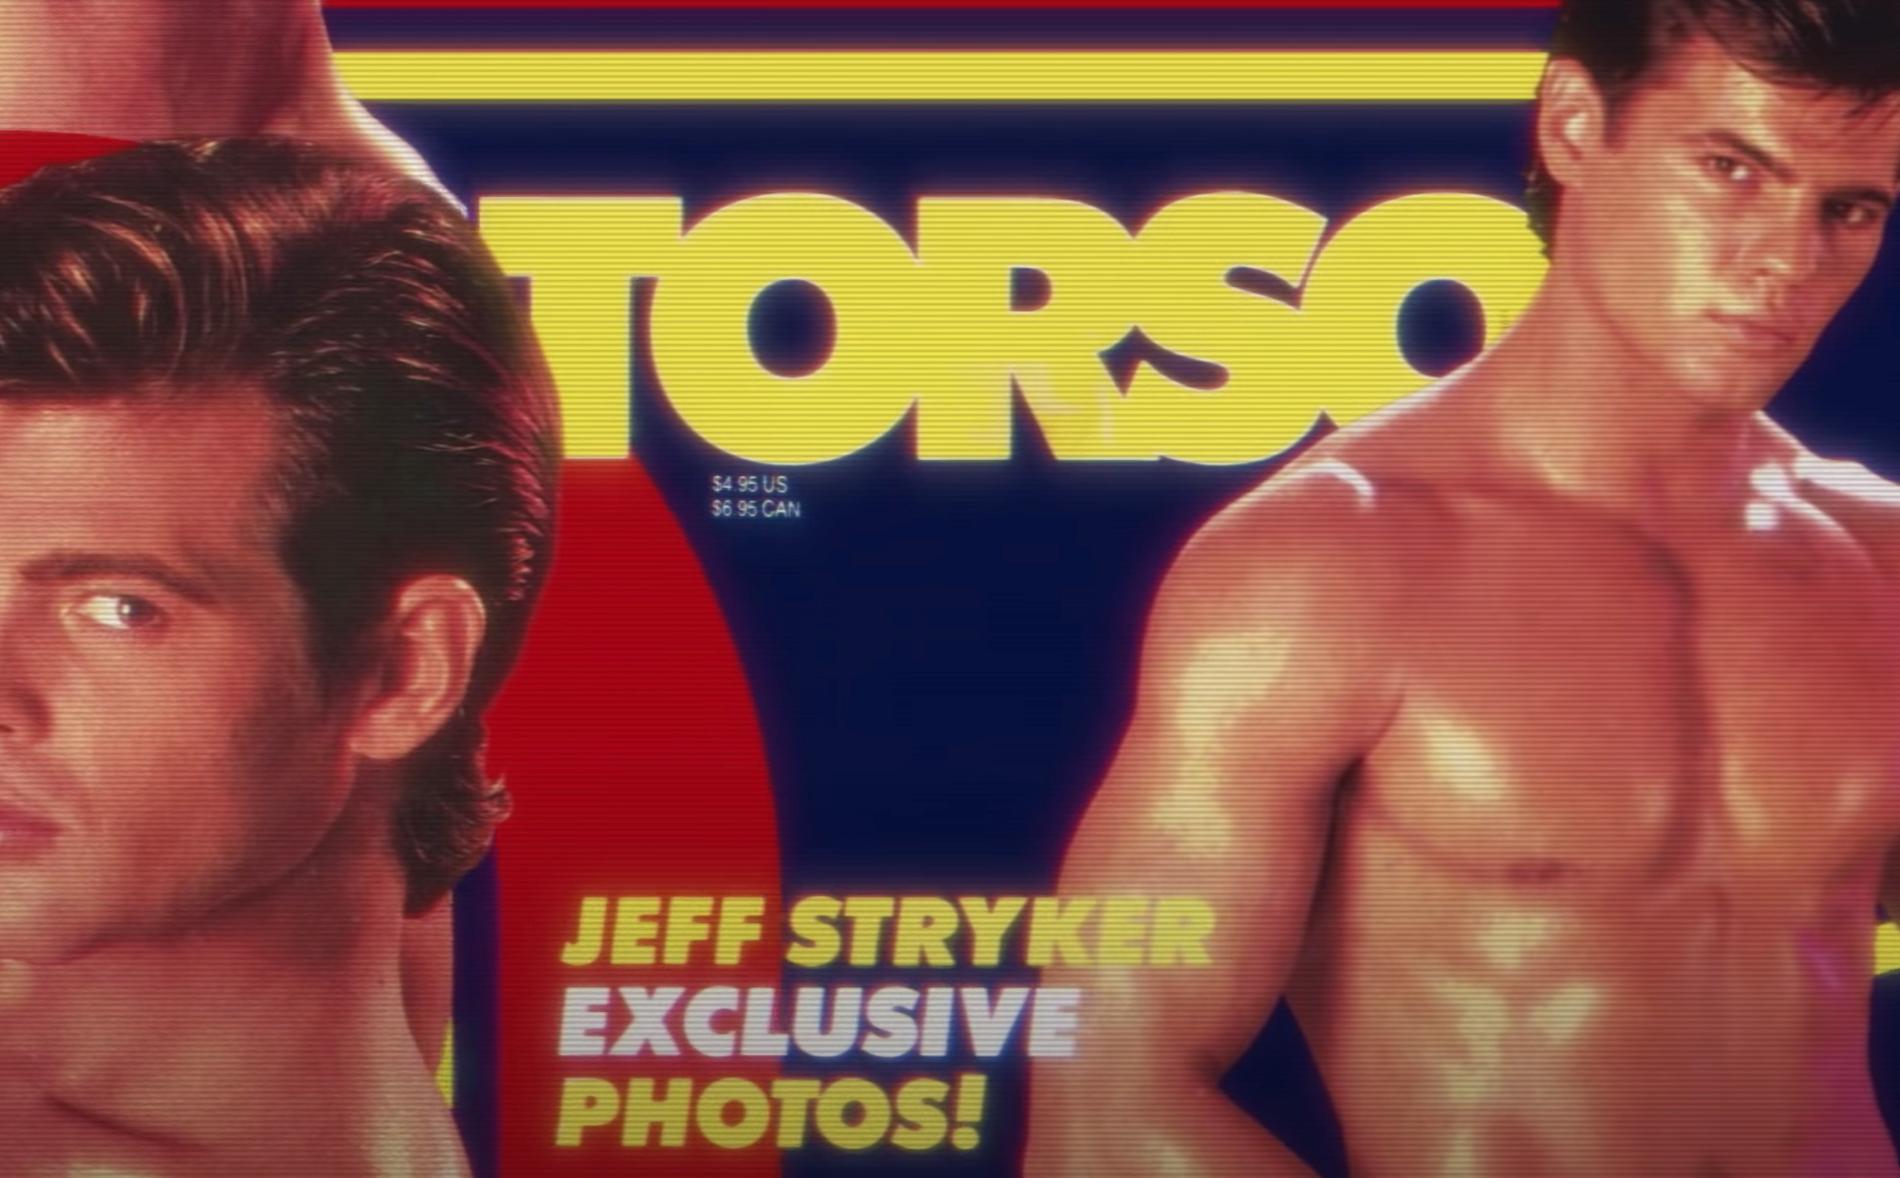 Detalj på omslag till gayporrfilm med Jeff Stryker.